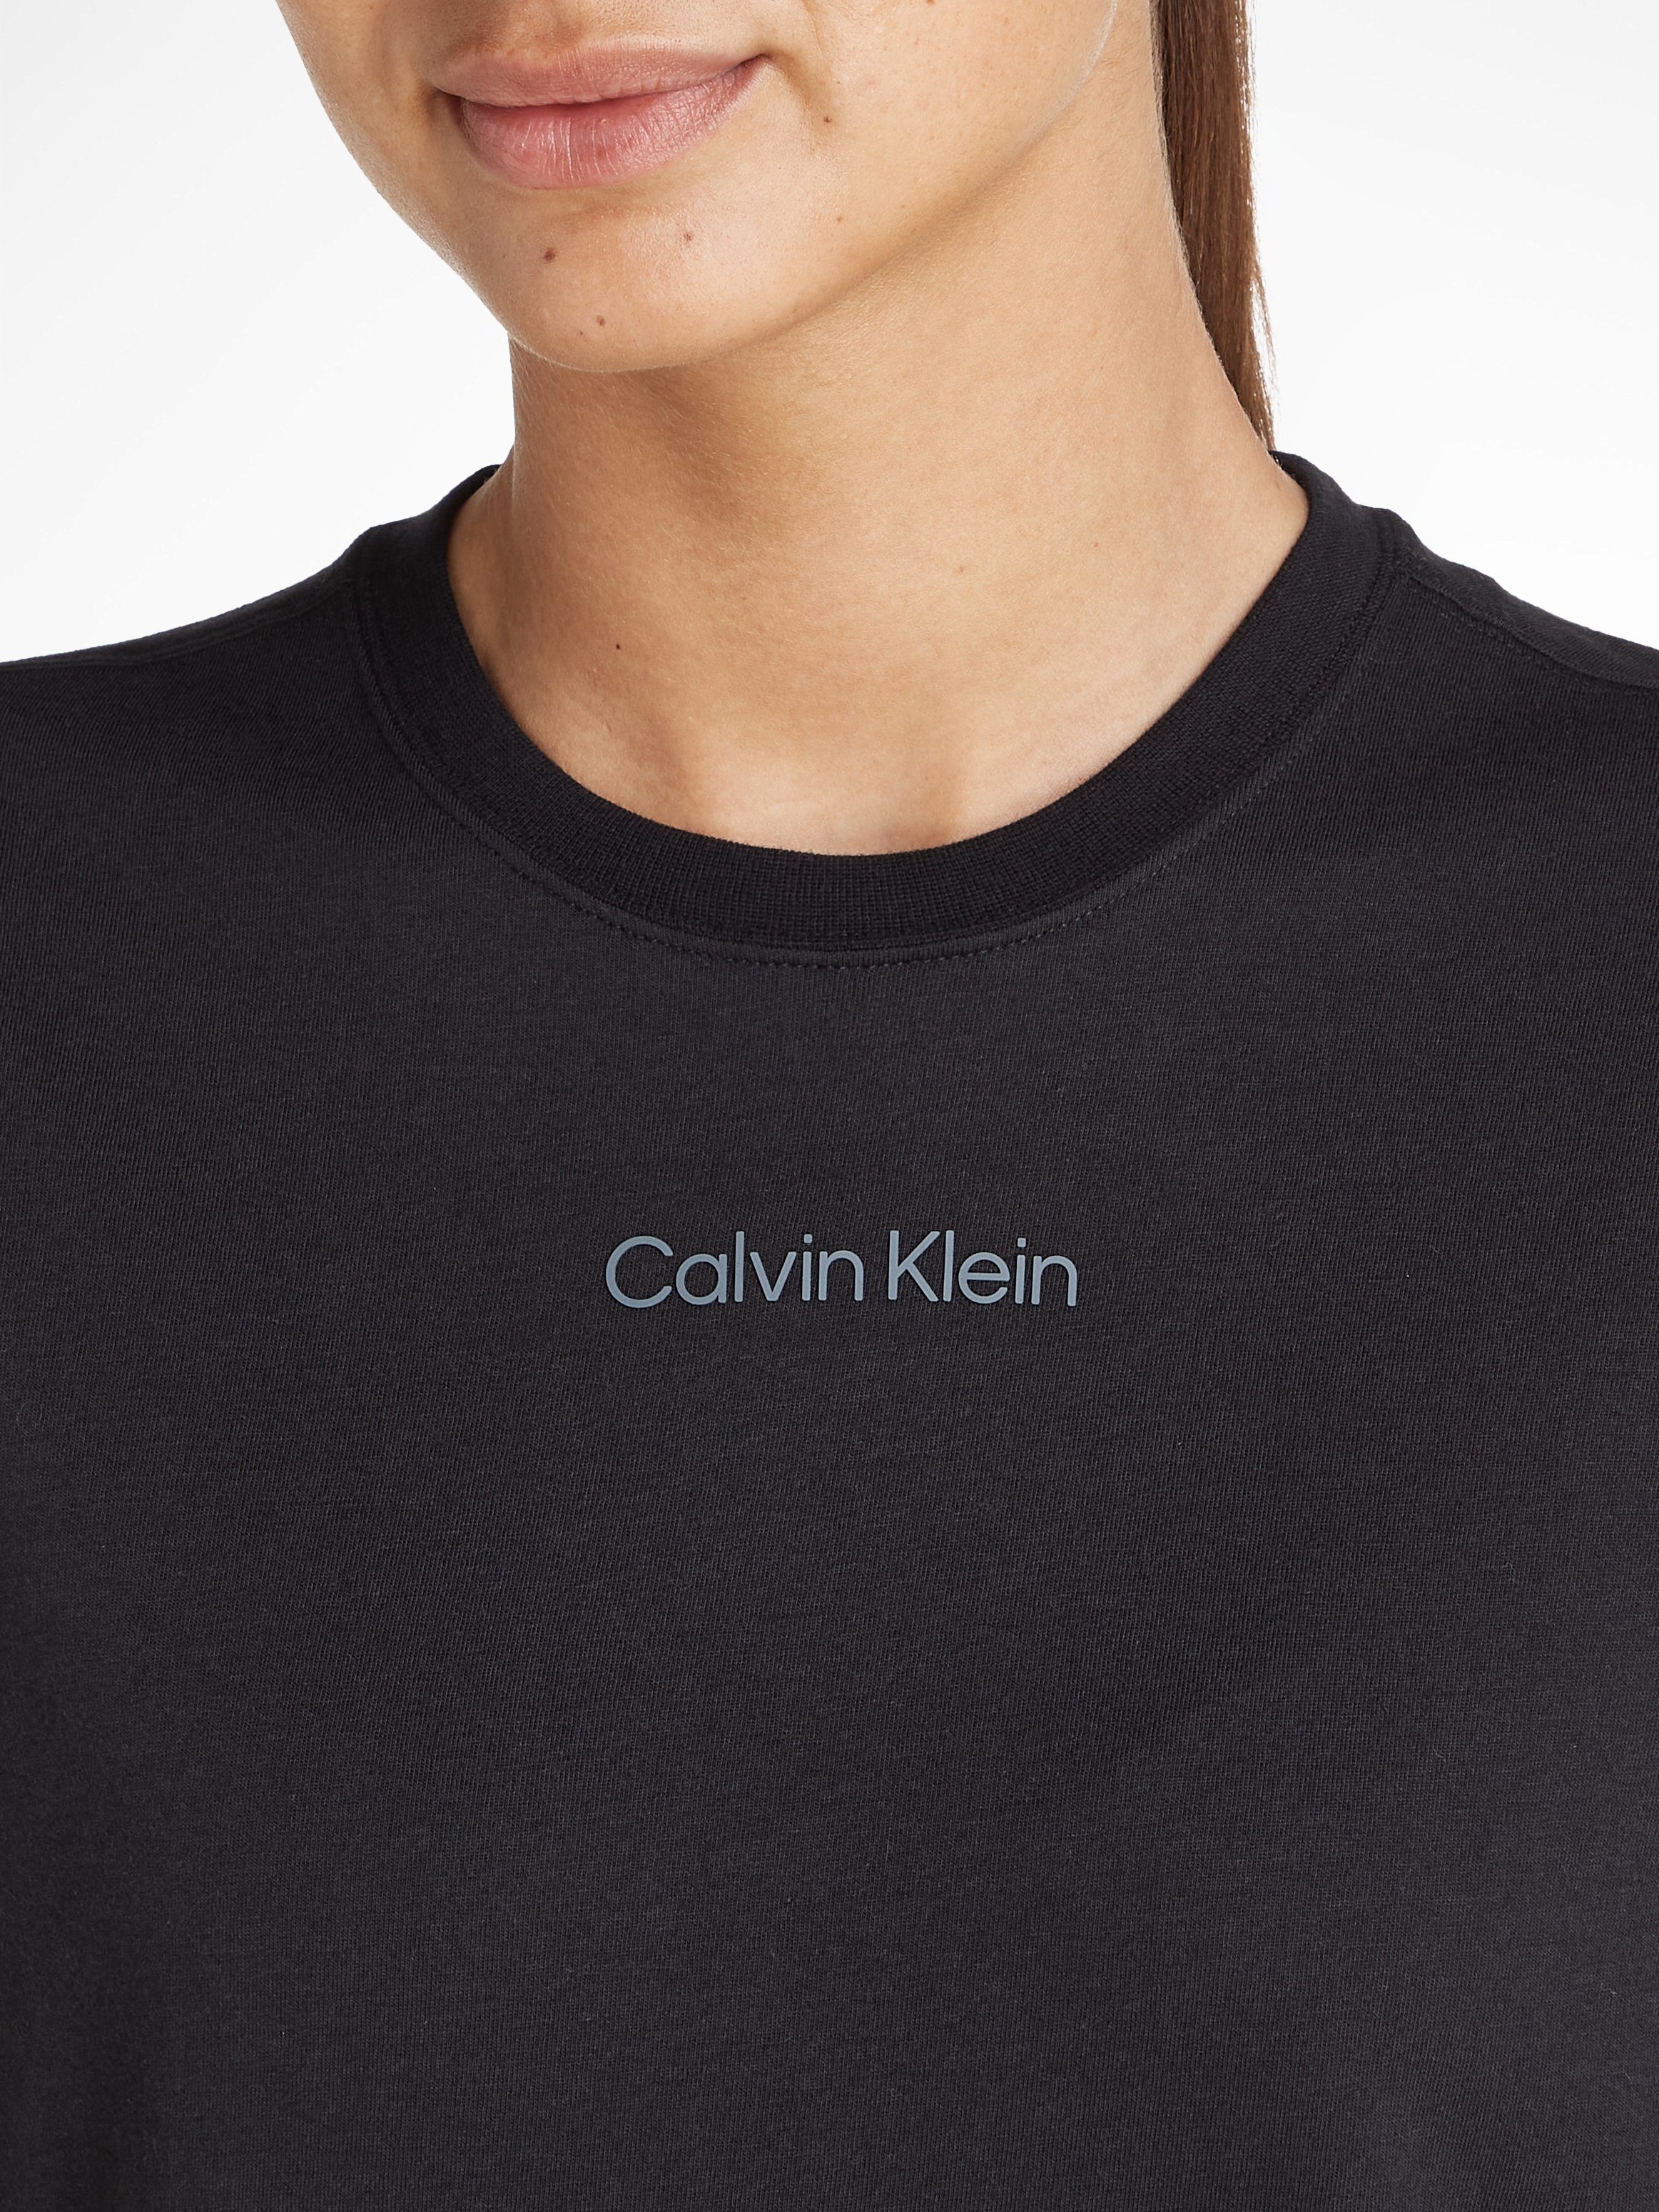 Klein schwarz Calvin Sport T-Shirt